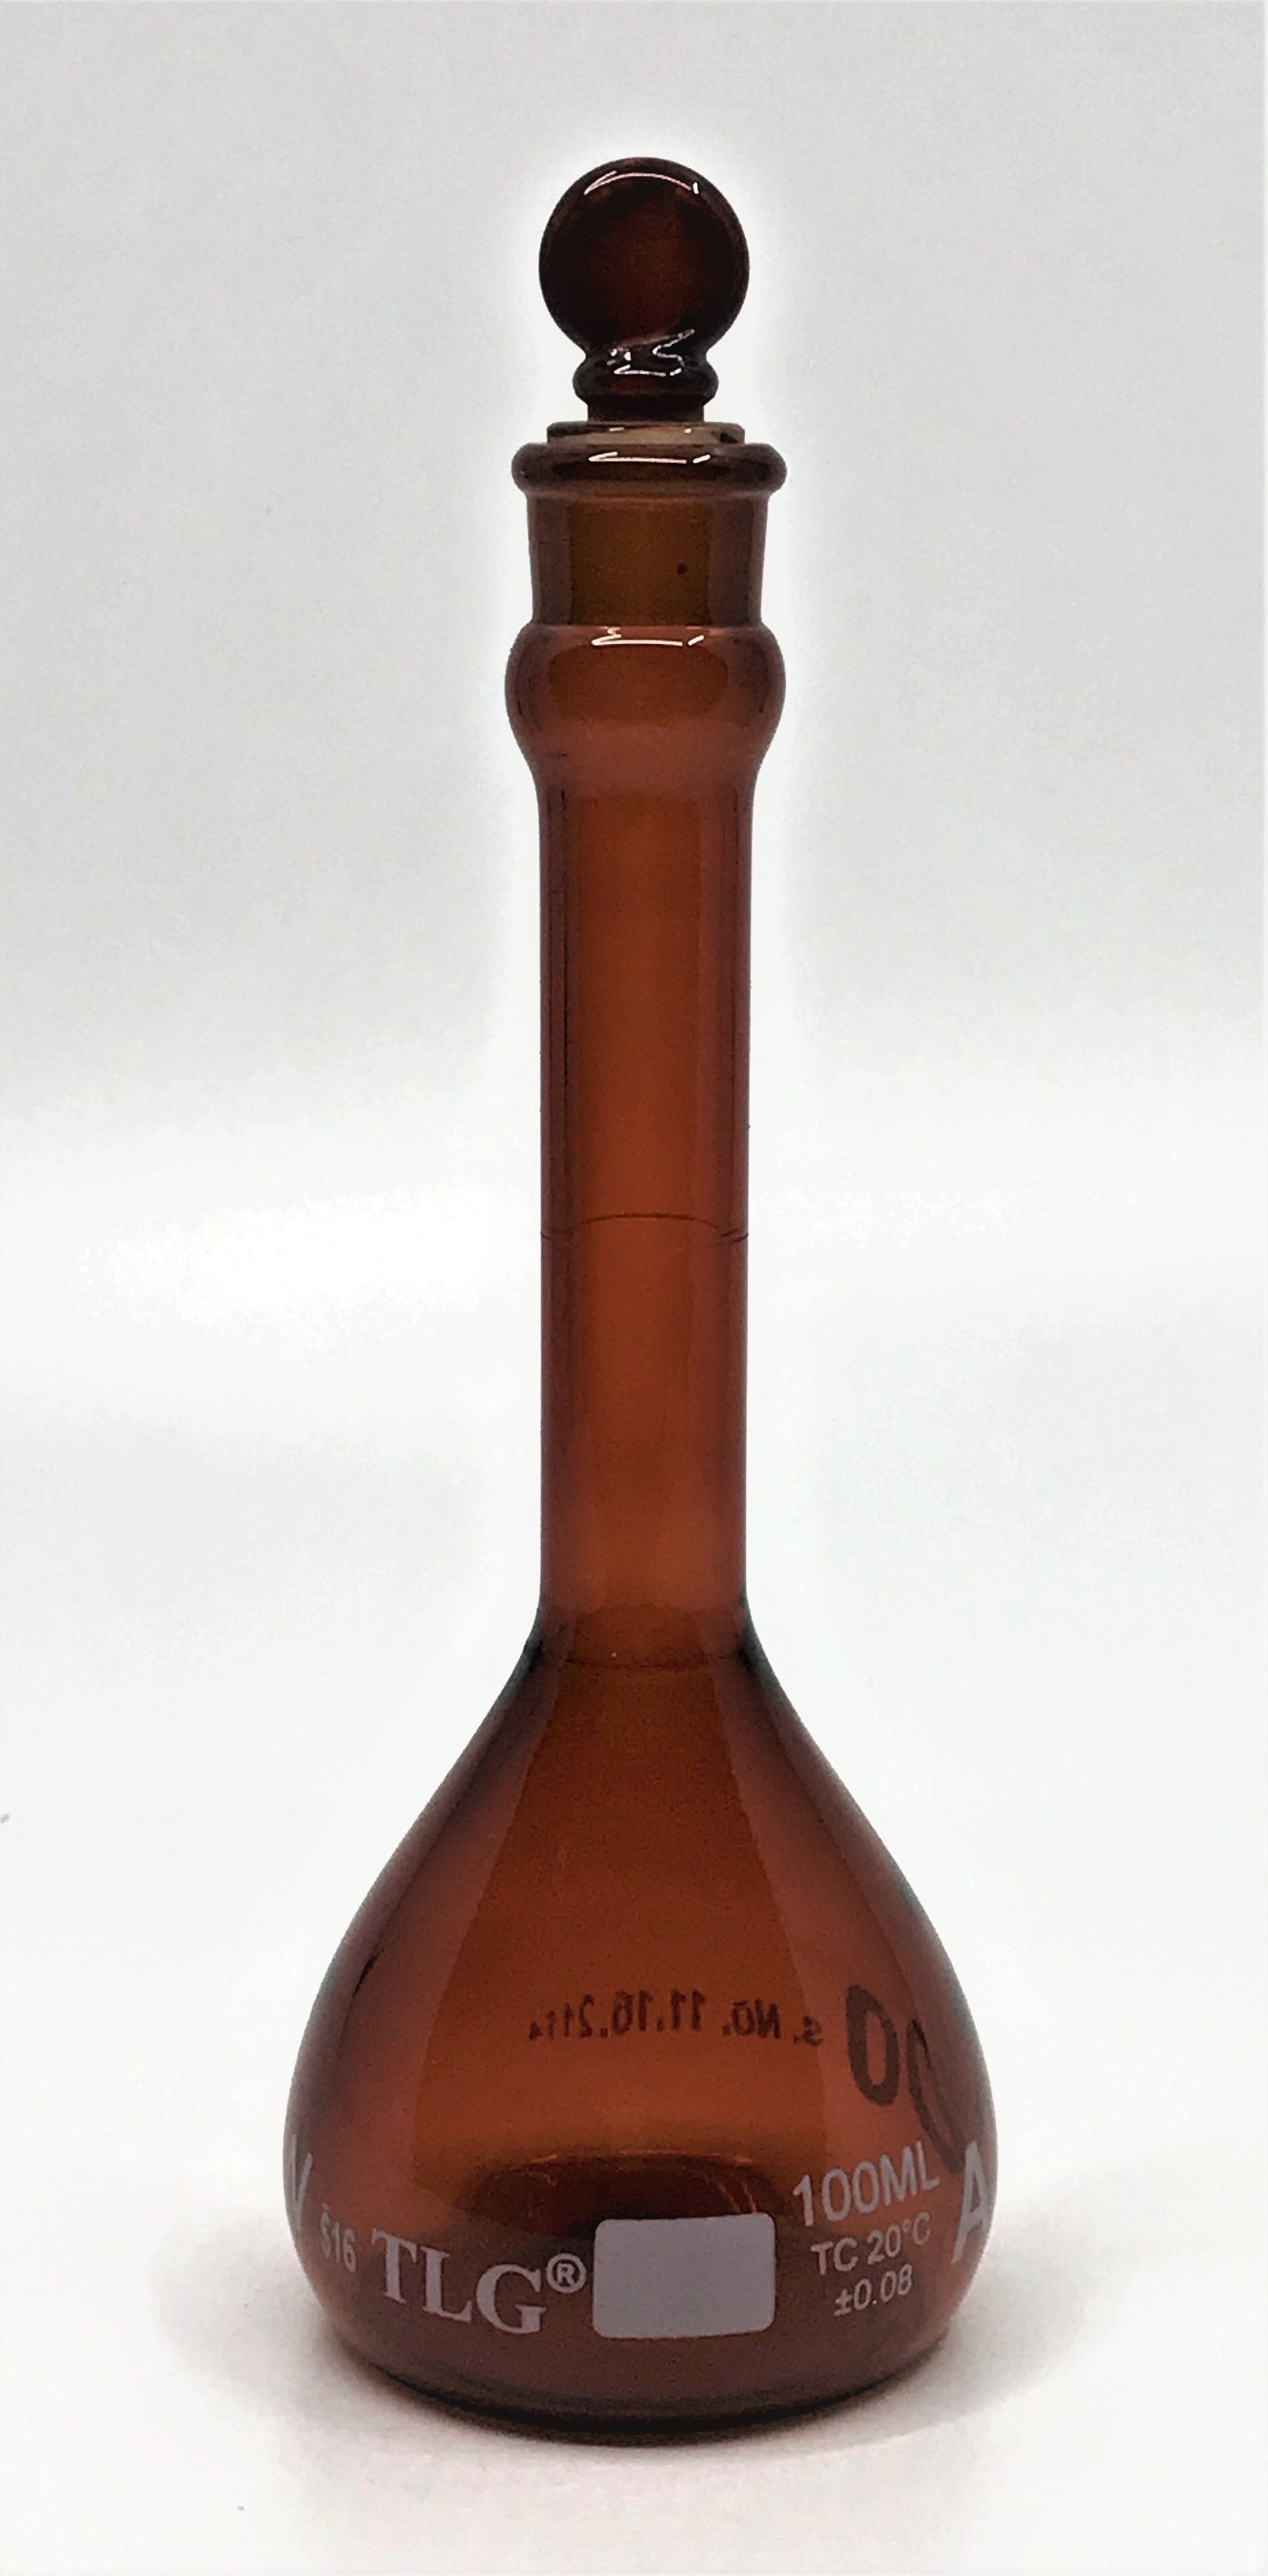 Fiole jaugée sérialisée et certifiée, classe A, ambre faiblement actinique, col large, avec bouchon en verre, selon les normes USP